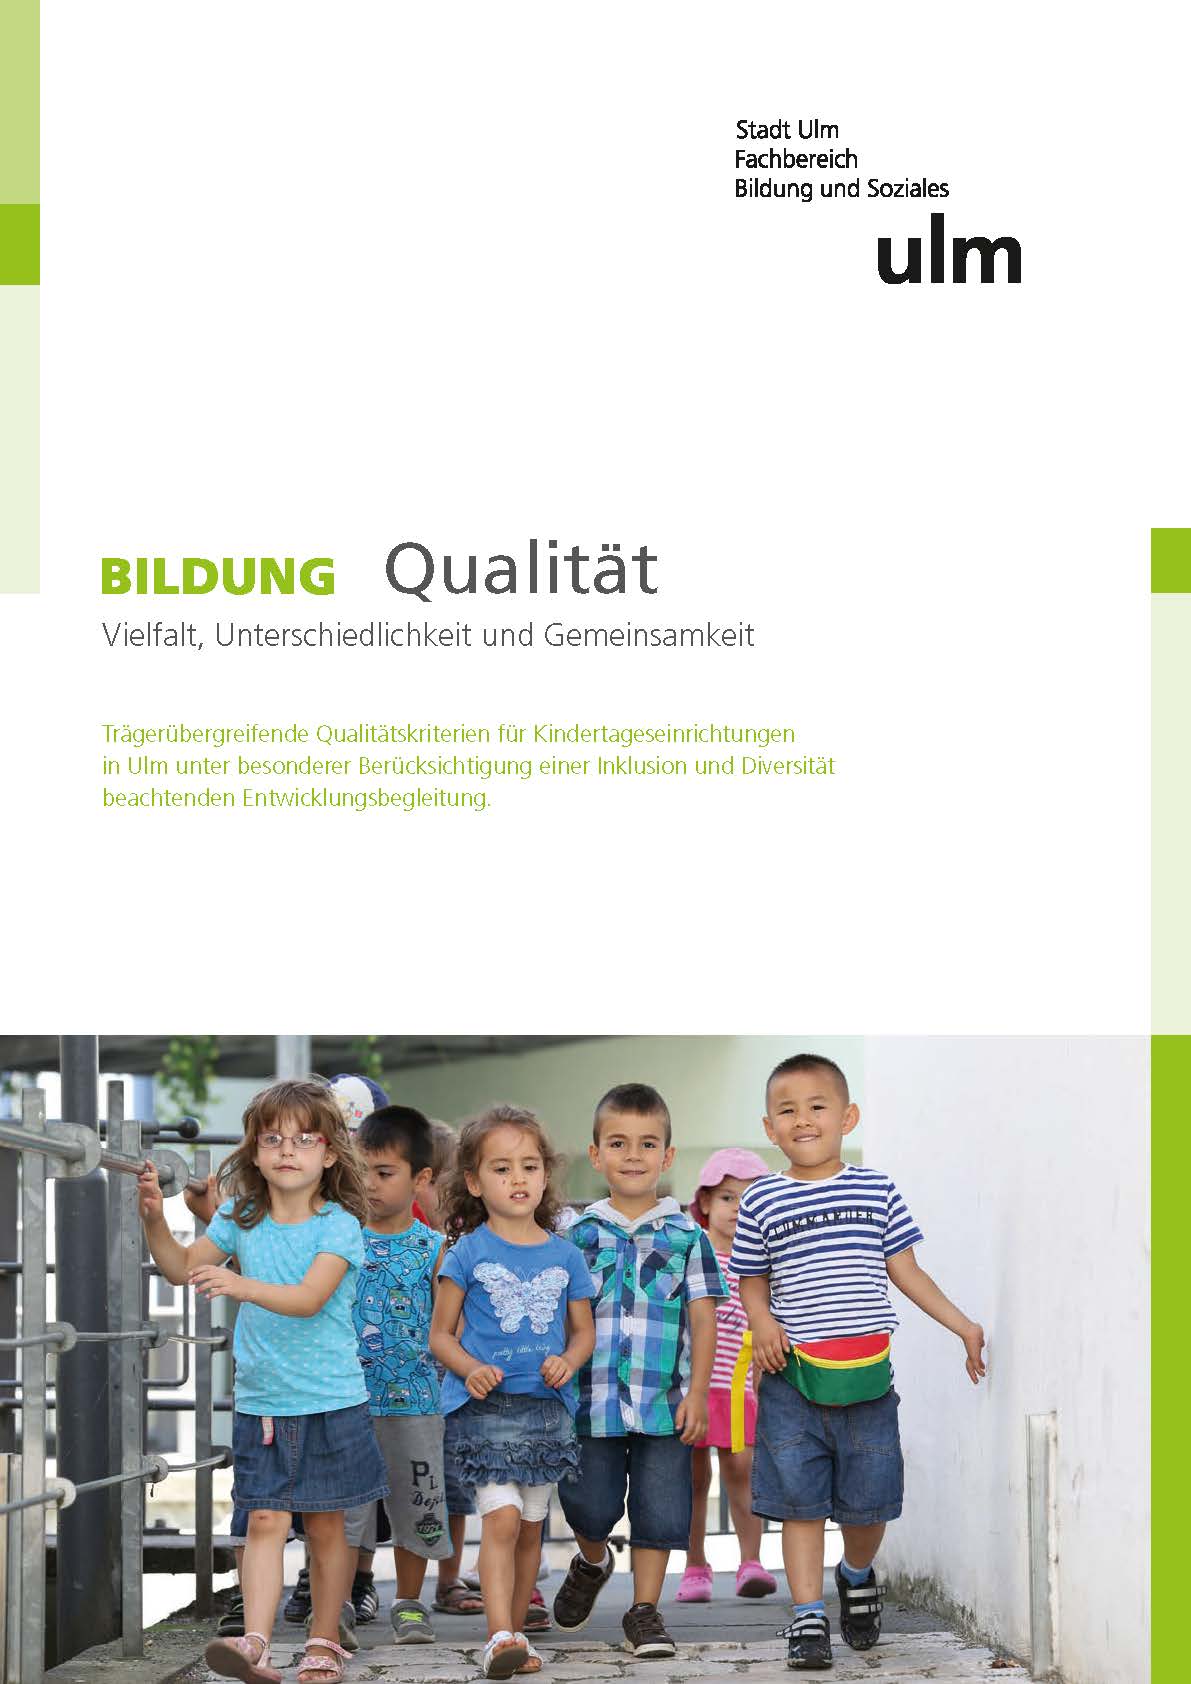 BILDUNG Qualität - Vielfalt, Unterschiedlichkeit und Gemeinsamkeit